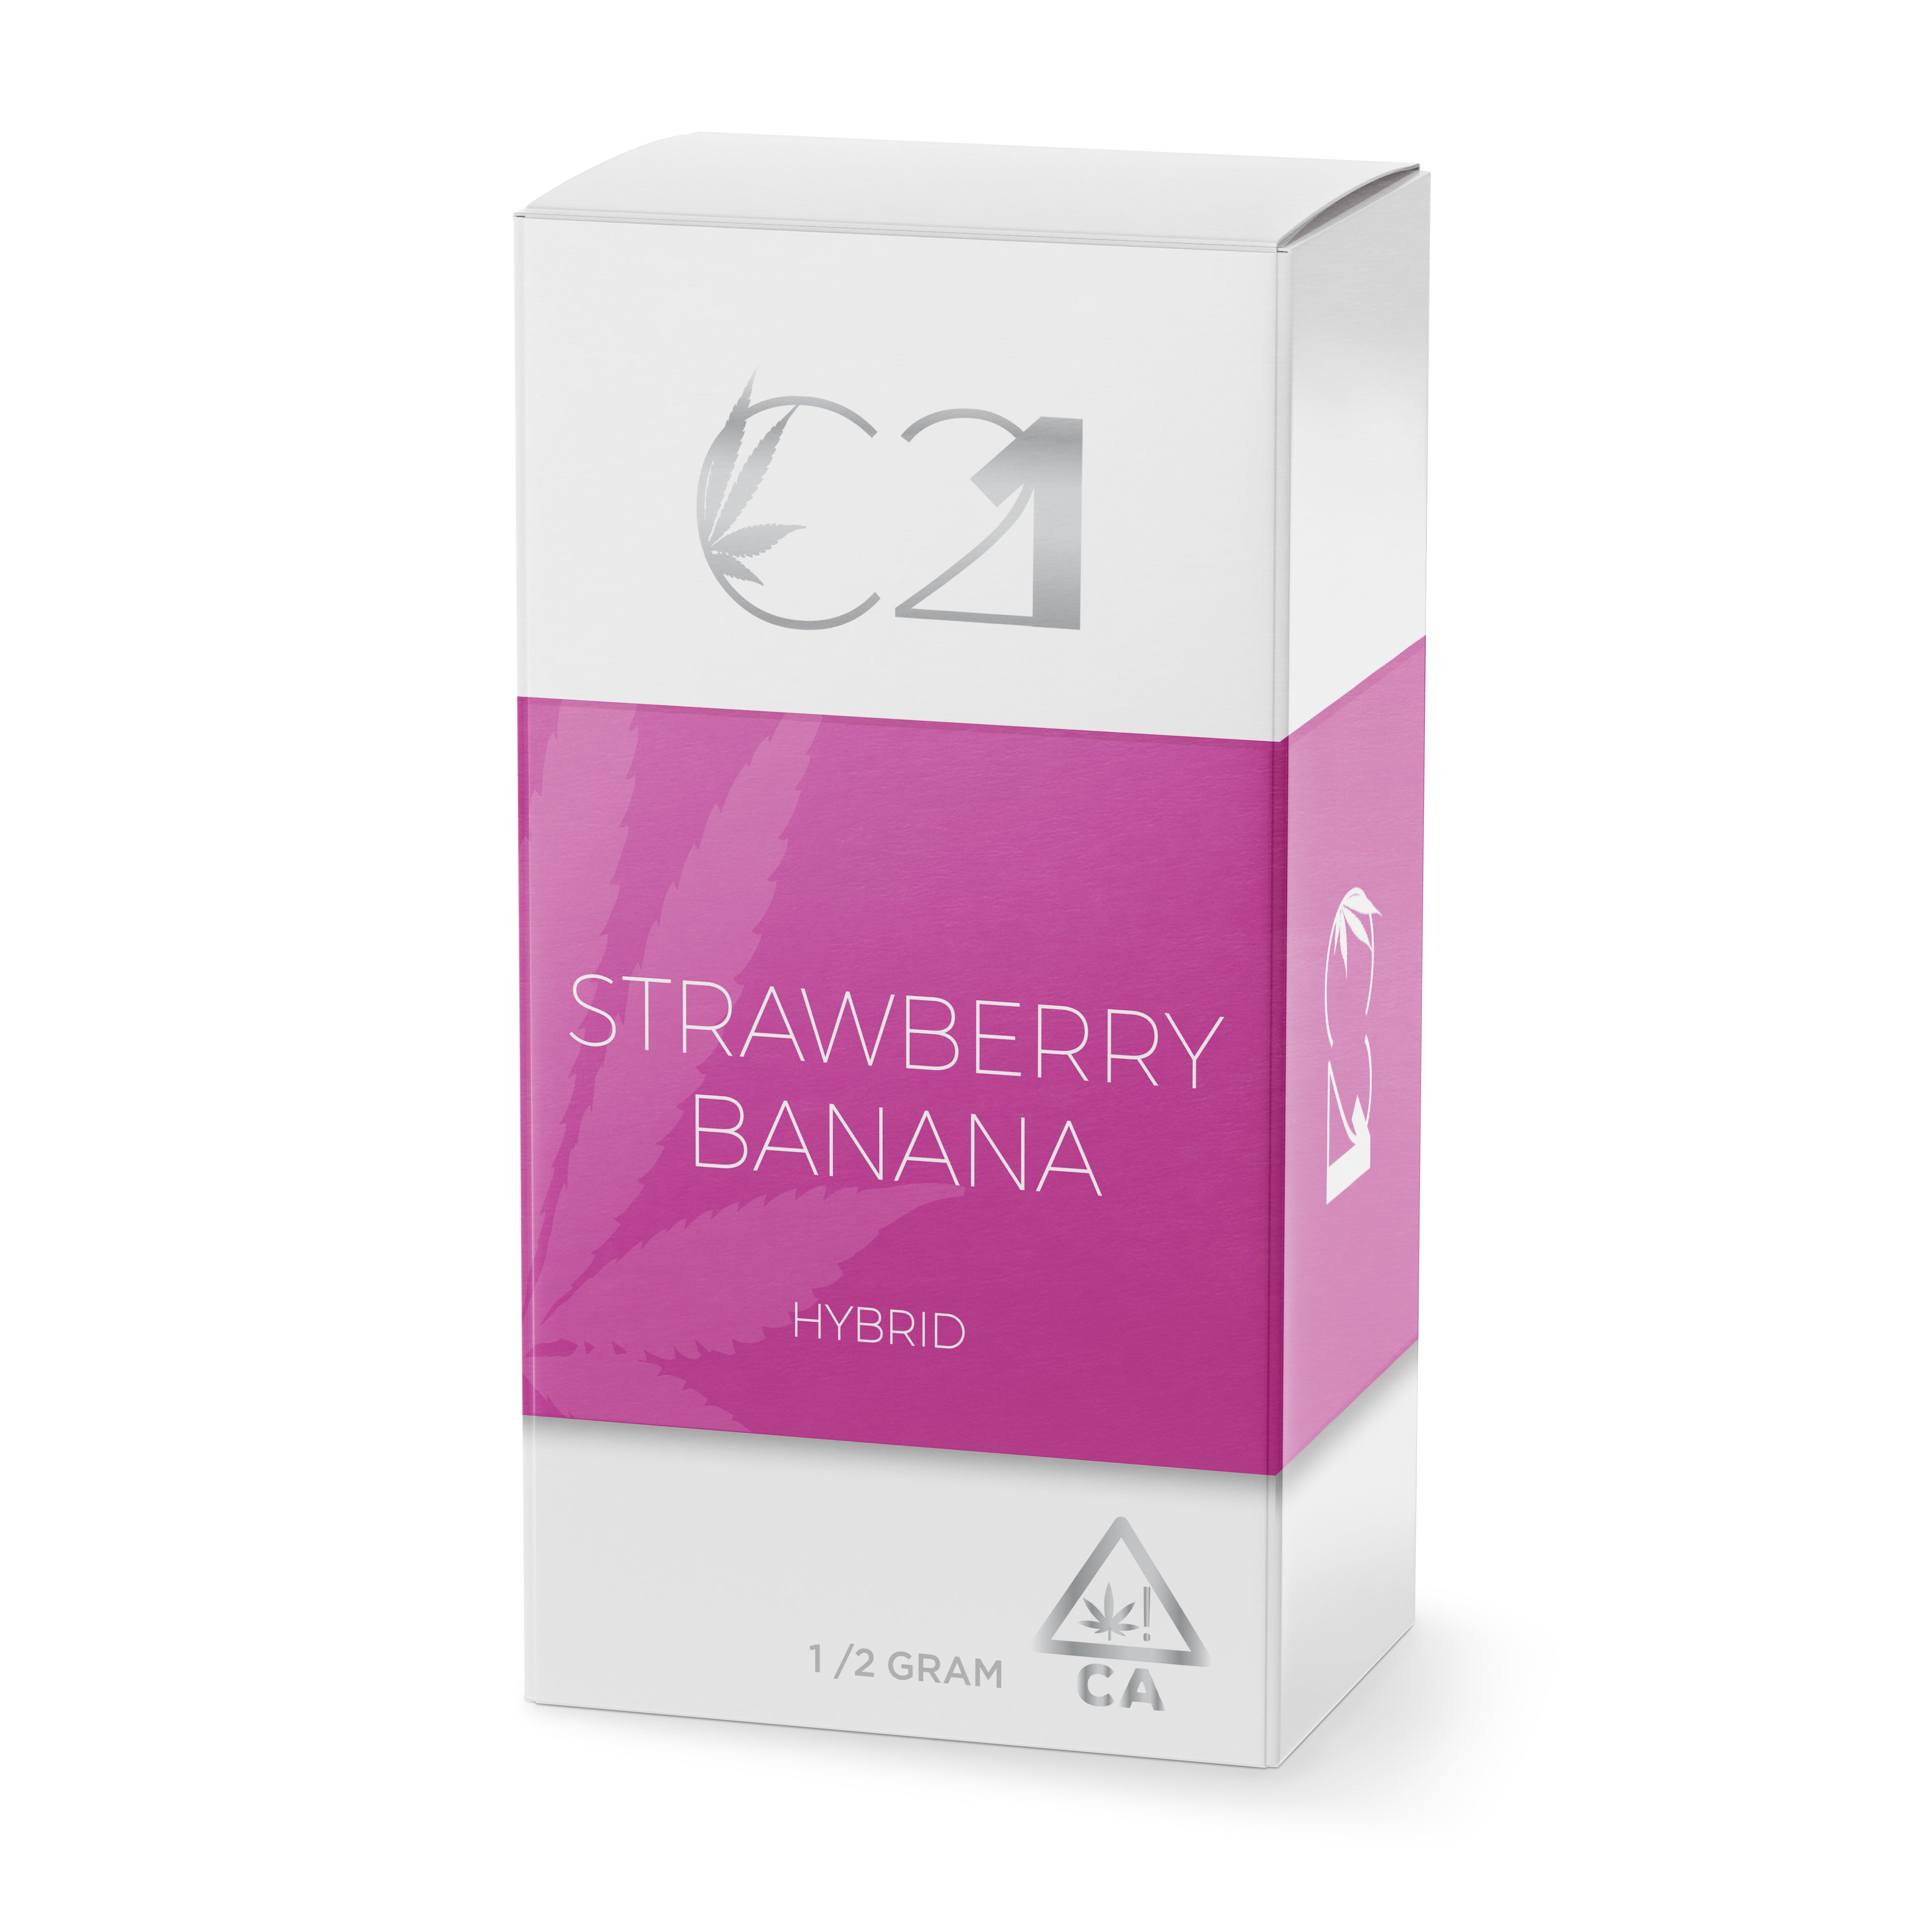 C21 Strawberry Banana